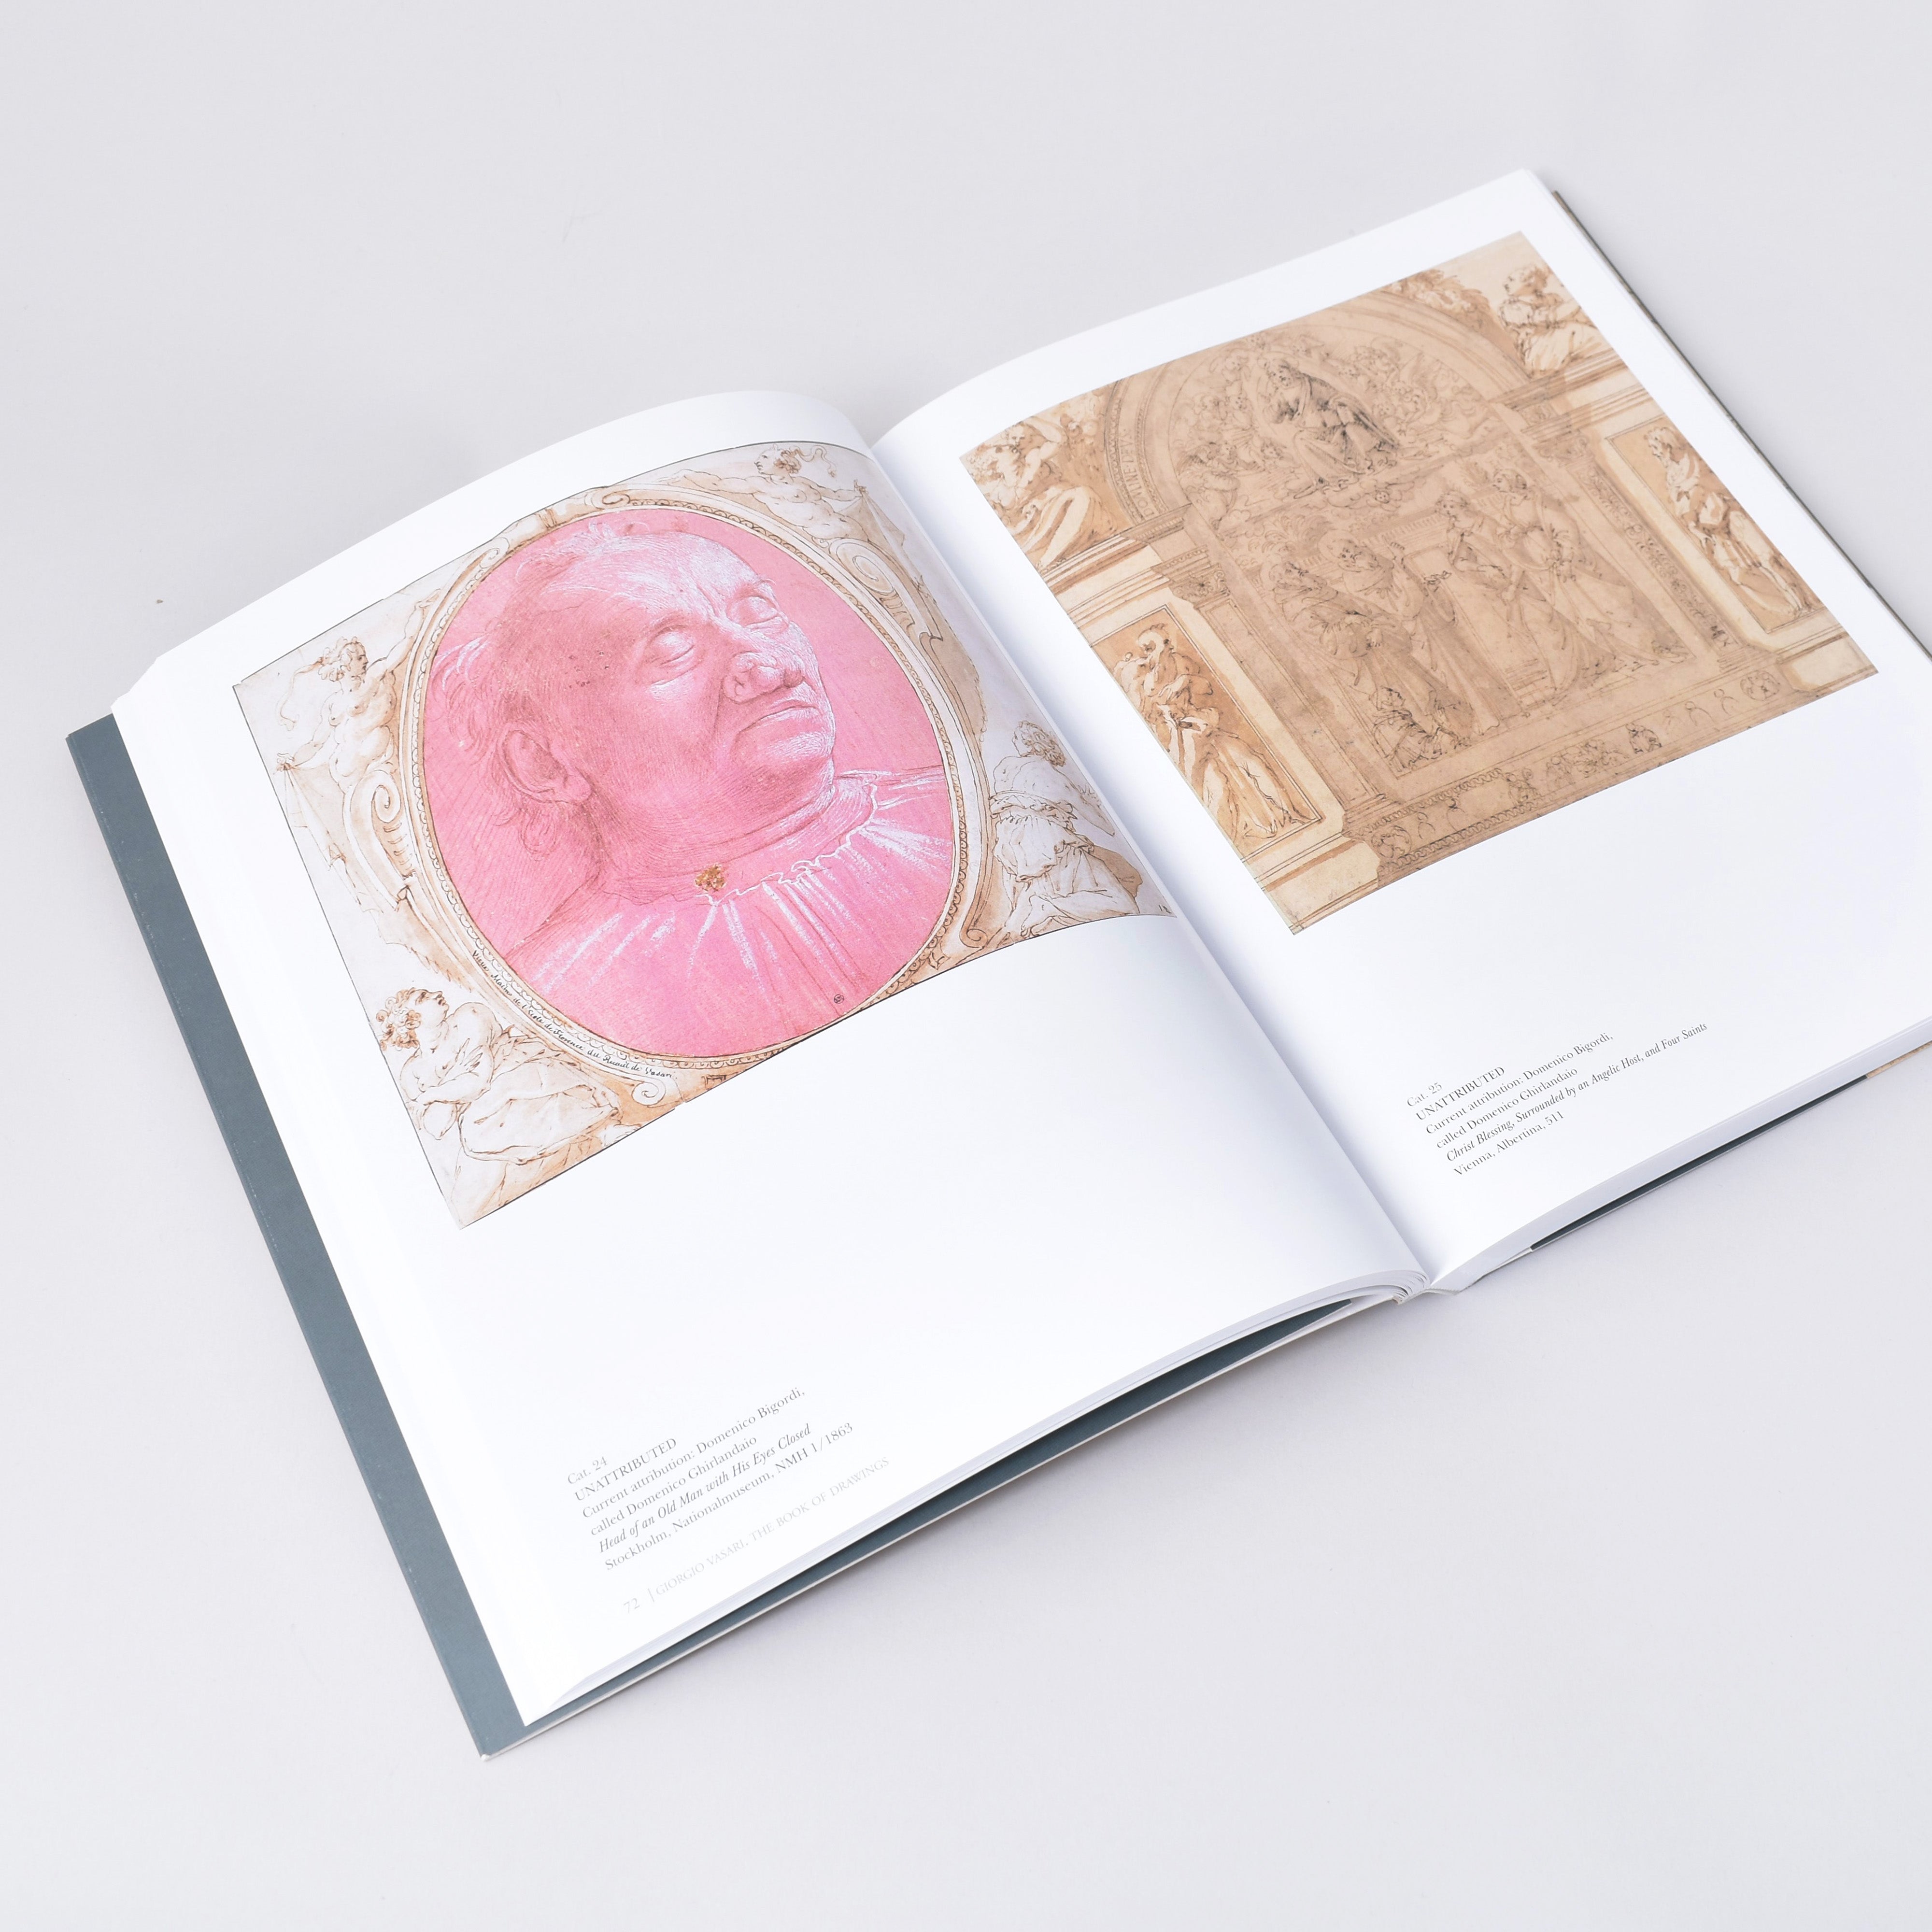 Insida i boken Giorgio Vasari - the book of drawing med bilder på två teckningar ur samlingen